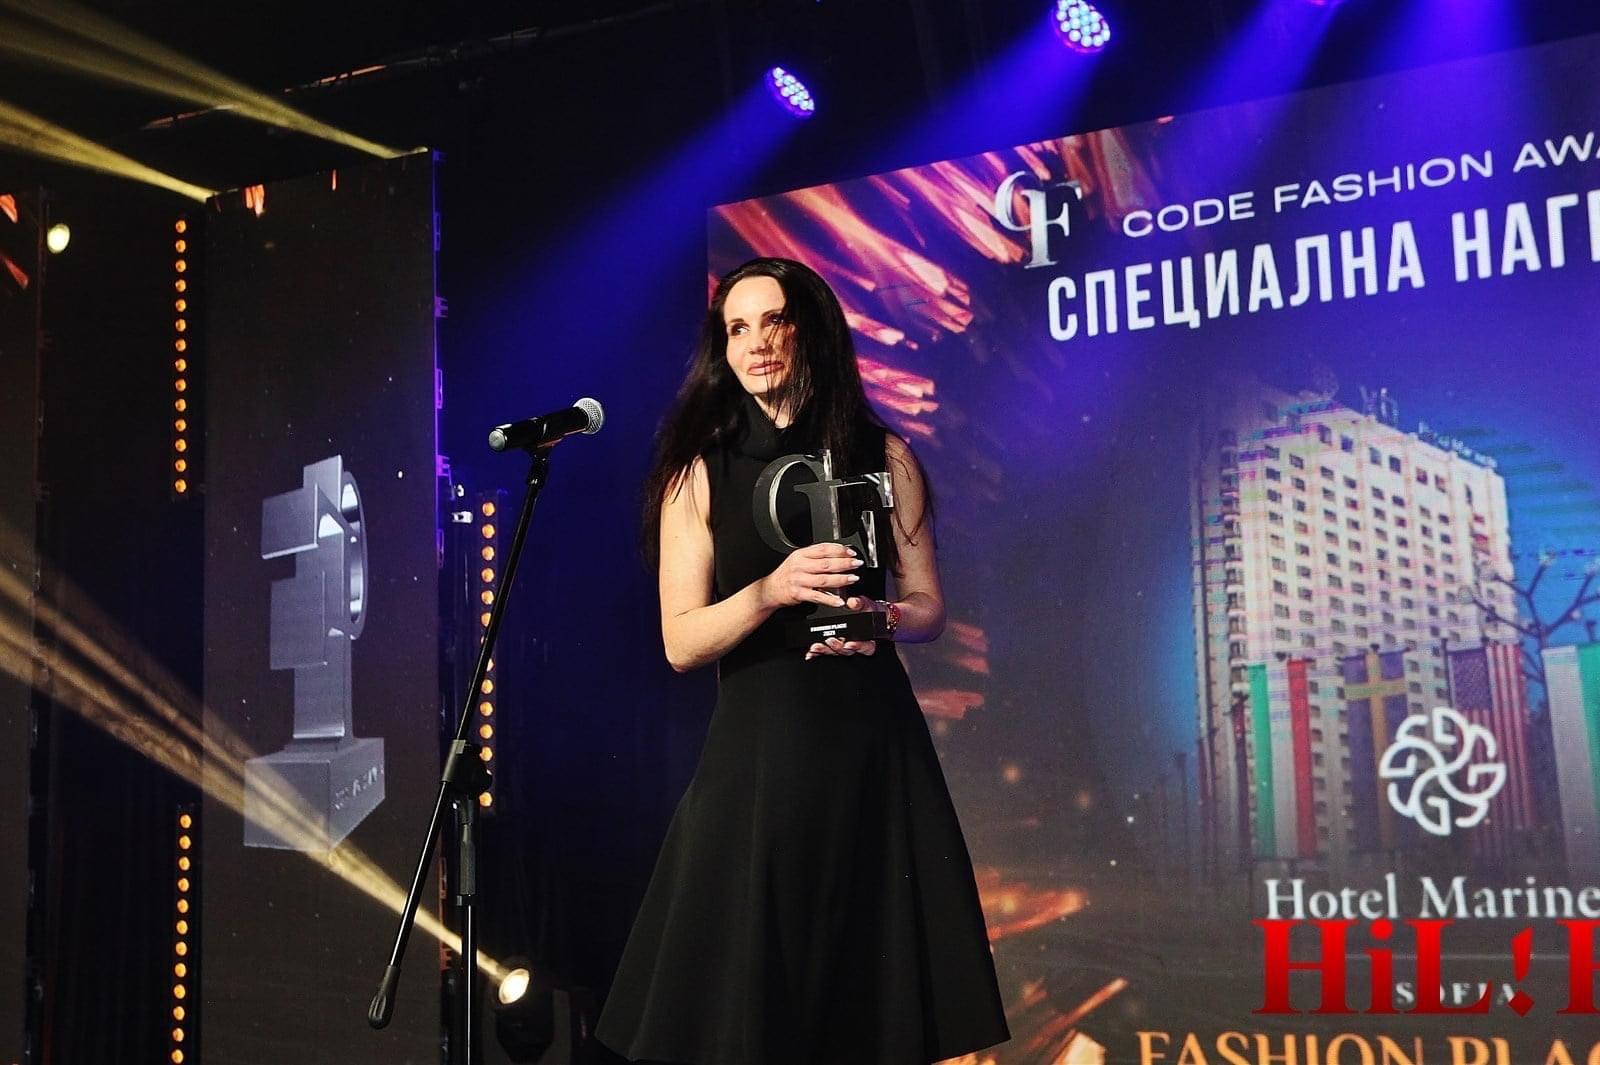 Признание: Екипът на хотел Marinela Sofia със заслужената награда Fashion p